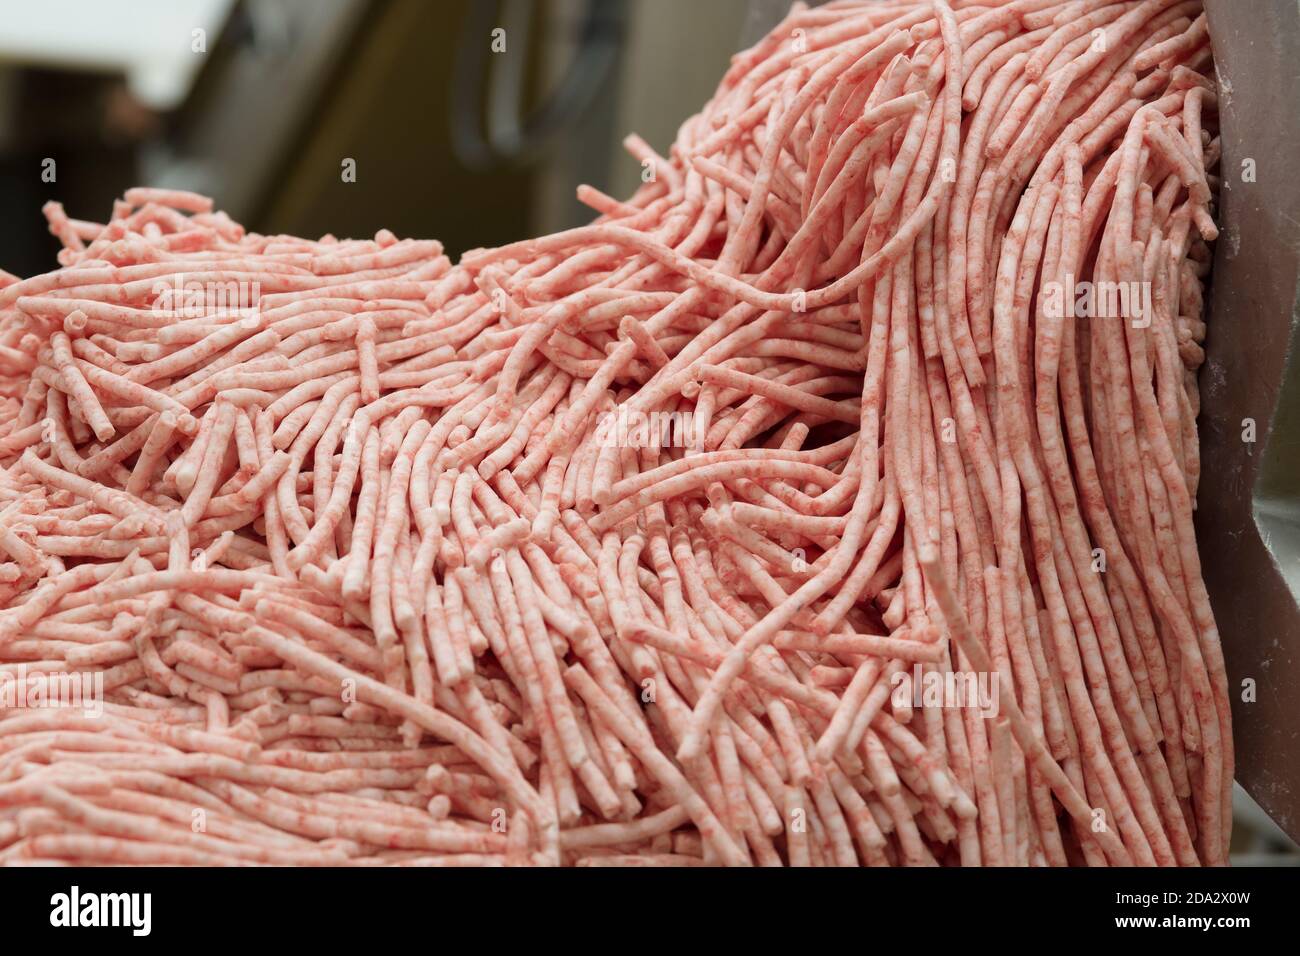 La carne picada se extruye de una máquina de picar industrial Foto de stock